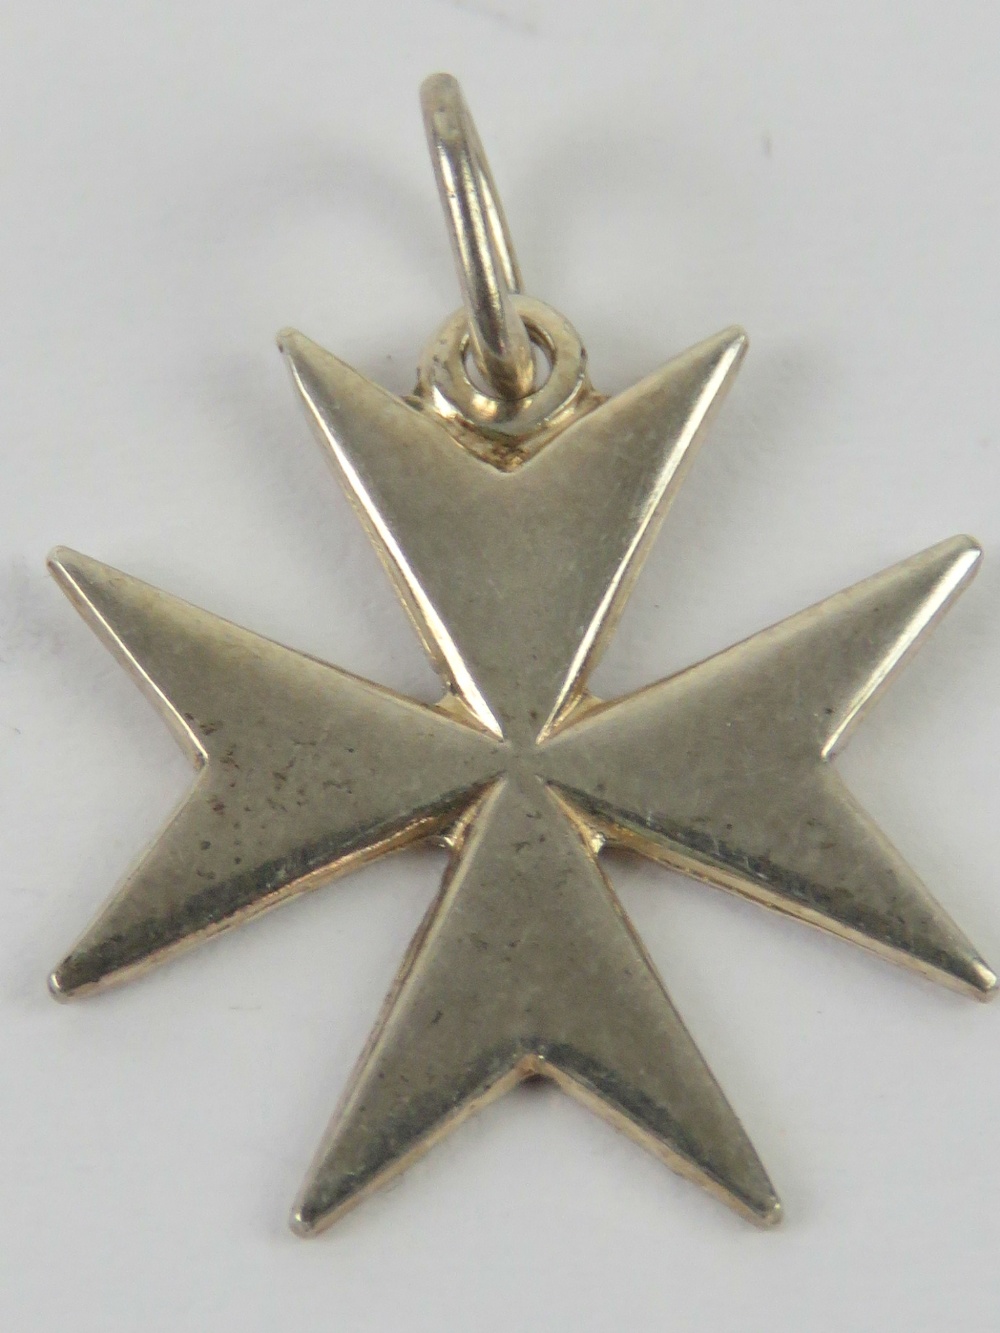 A hallmarked silver Maltese cross pendan